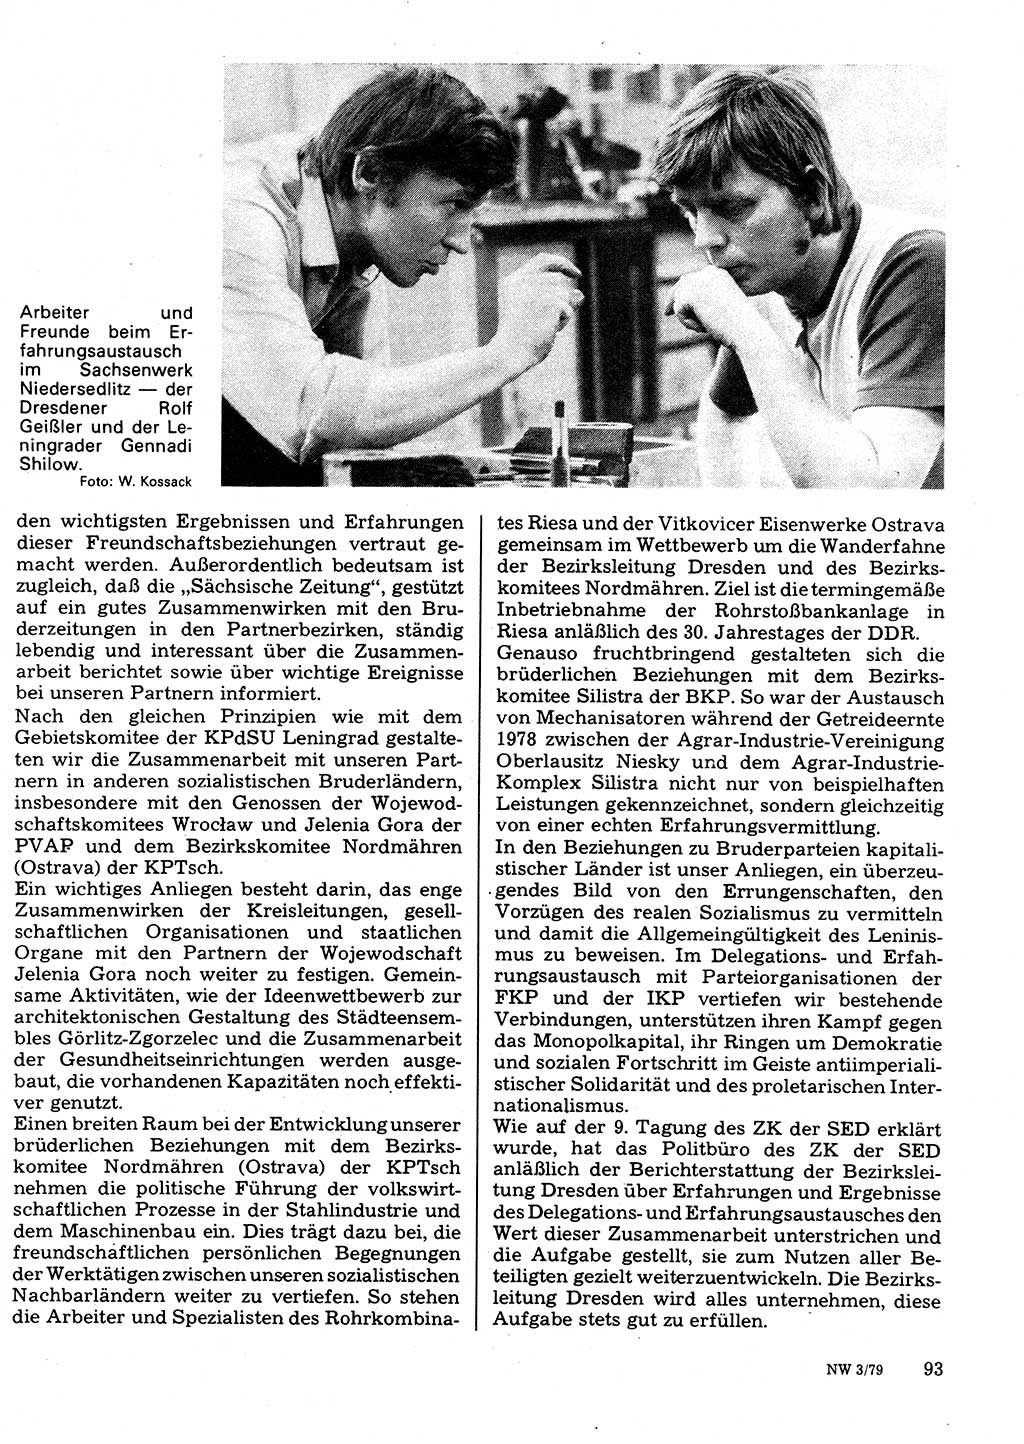 Neuer Weg (NW), Organ des Zentralkomitees (ZK) der SED (Sozialistische Einheitspartei Deutschlands) für Fragen des Parteilebens, 34. Jahrgang [Deutsche Demokratische Republik (DDR)] 1979, Seite 93 (NW ZK SED DDR 1979, S. 93)